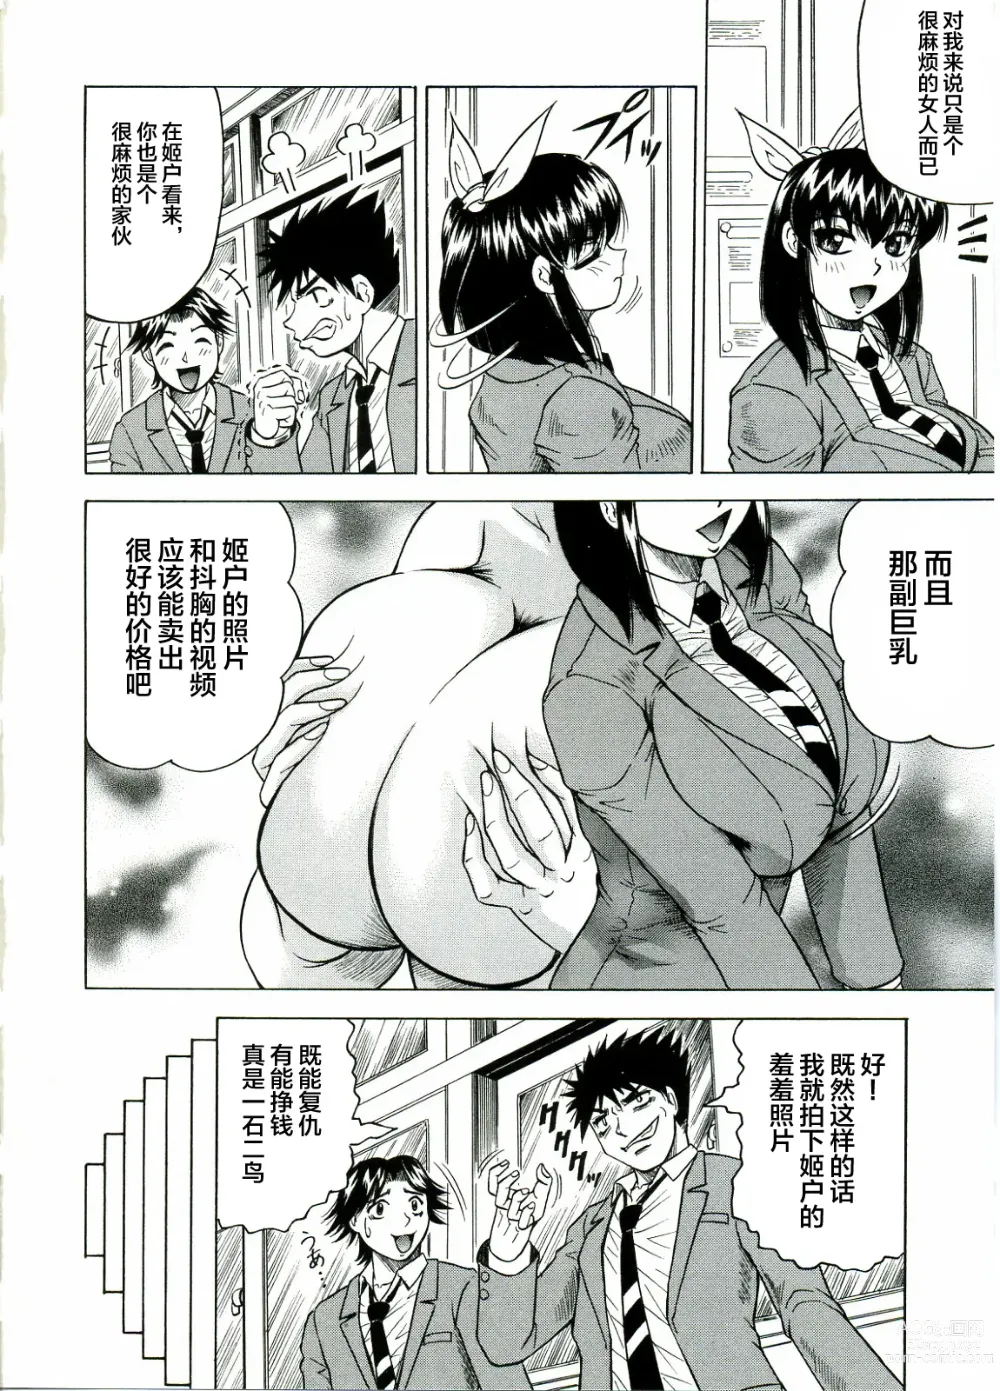 Page 10 of manga Tames